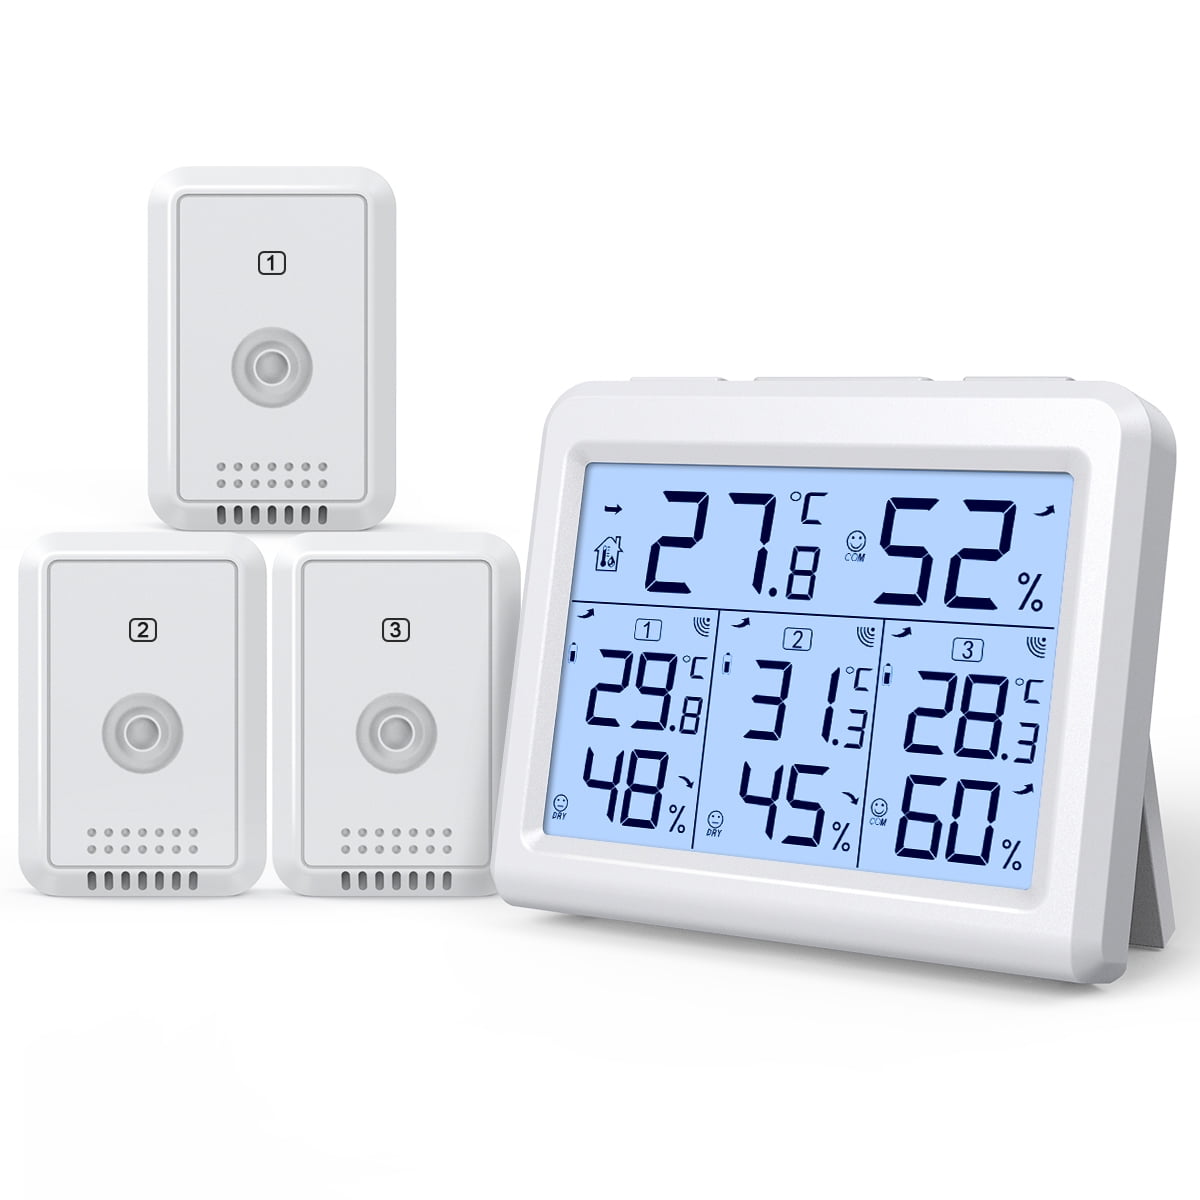 Top Seller Wireless Indoor Outdoor Thermometer Hygrometer